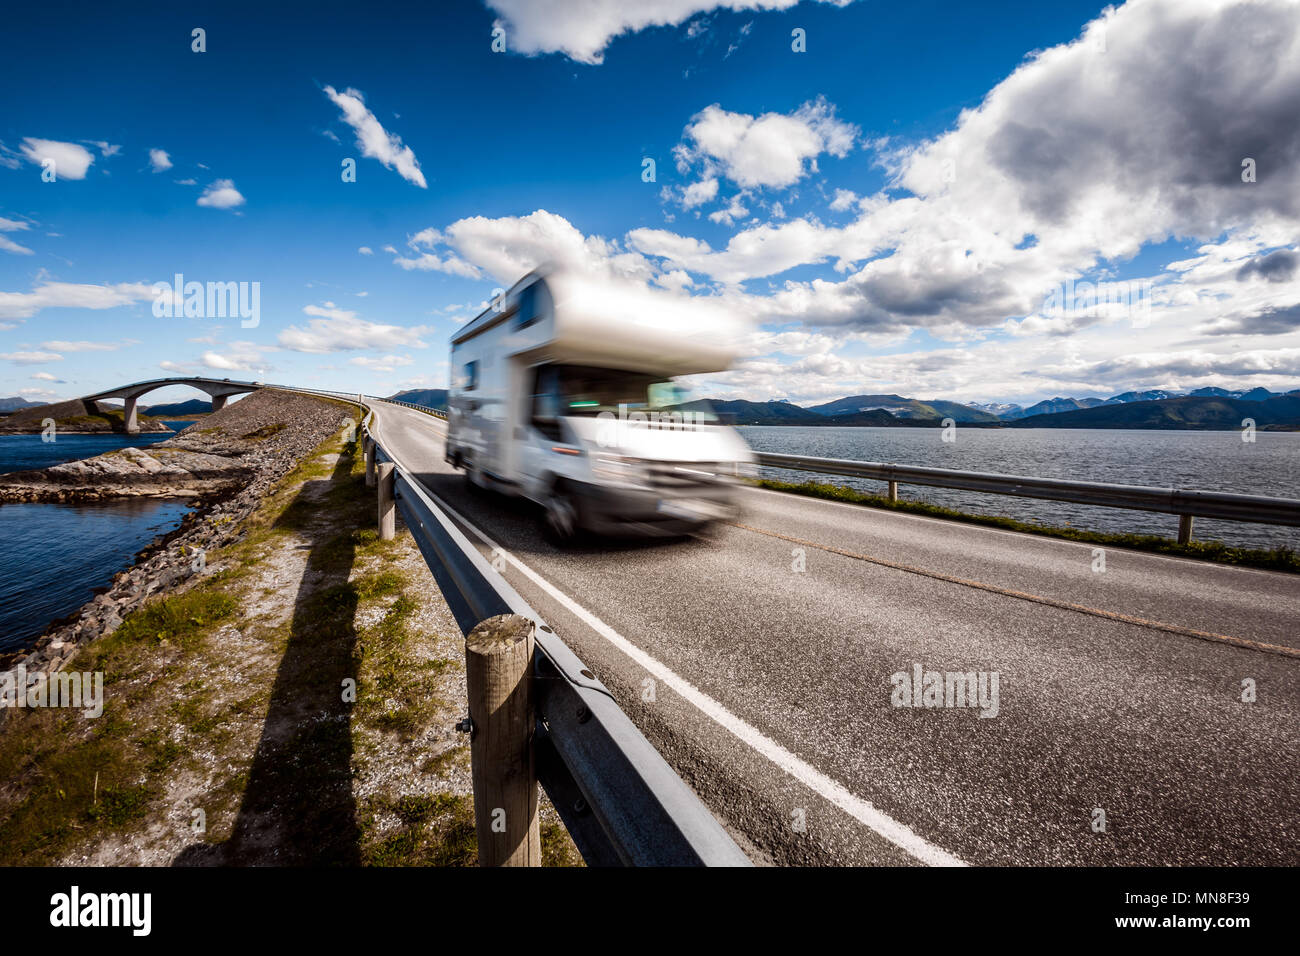 Caravan Auto RV fährt auf der Autobahn in Norwegen. Atlantik Straße oder den Atlantik Straße (atlanterhavsveien) der Titel vergeben wurde als (Norwegische Bau des Jahrhunderts). Stockfoto